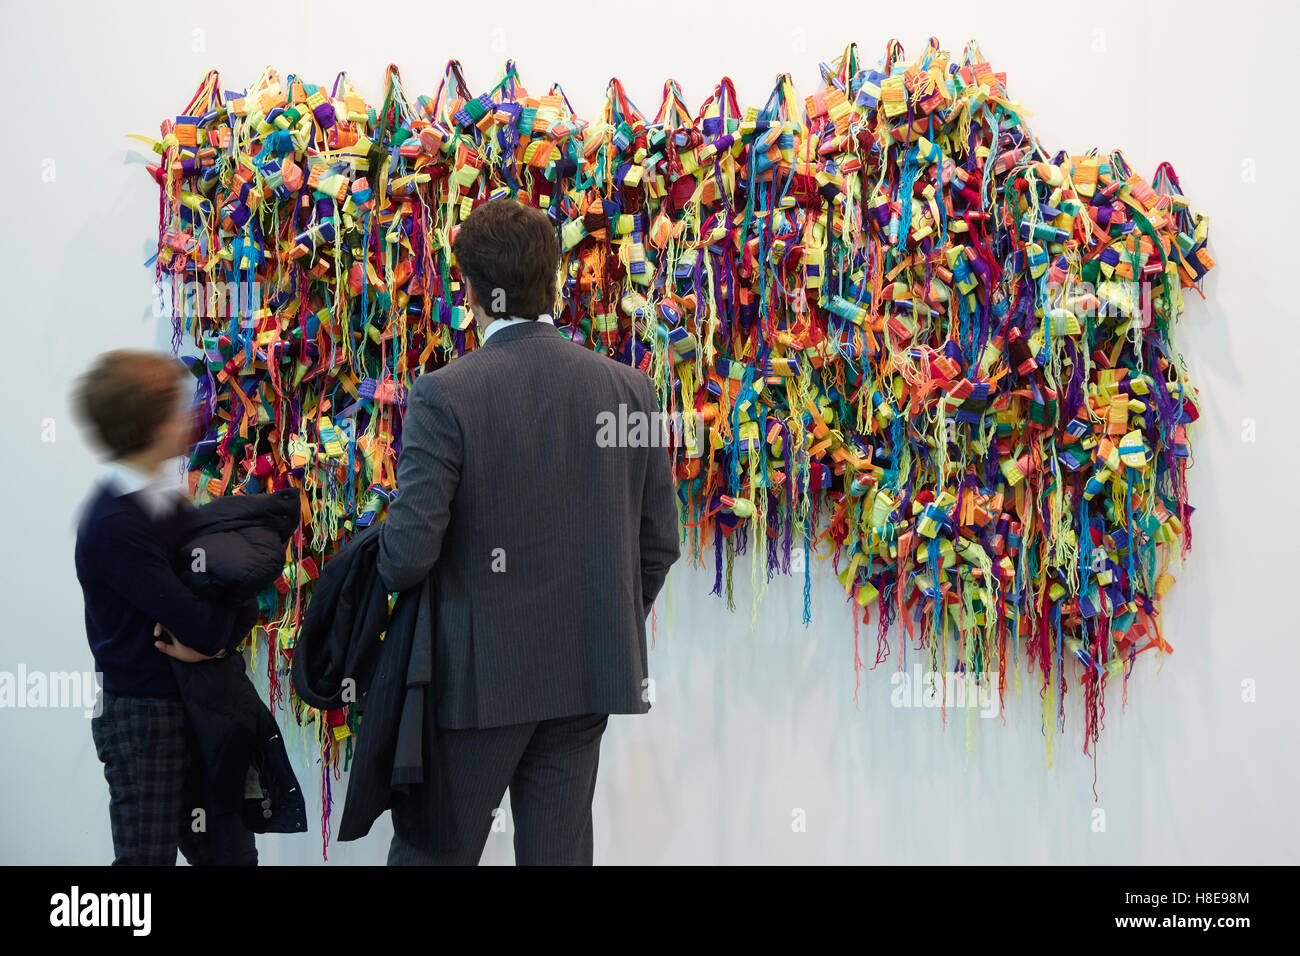 Man and boy près de sculpture colorée pendant Artissima, foire d'art contemporain ouverture à Turin Banque D'Images